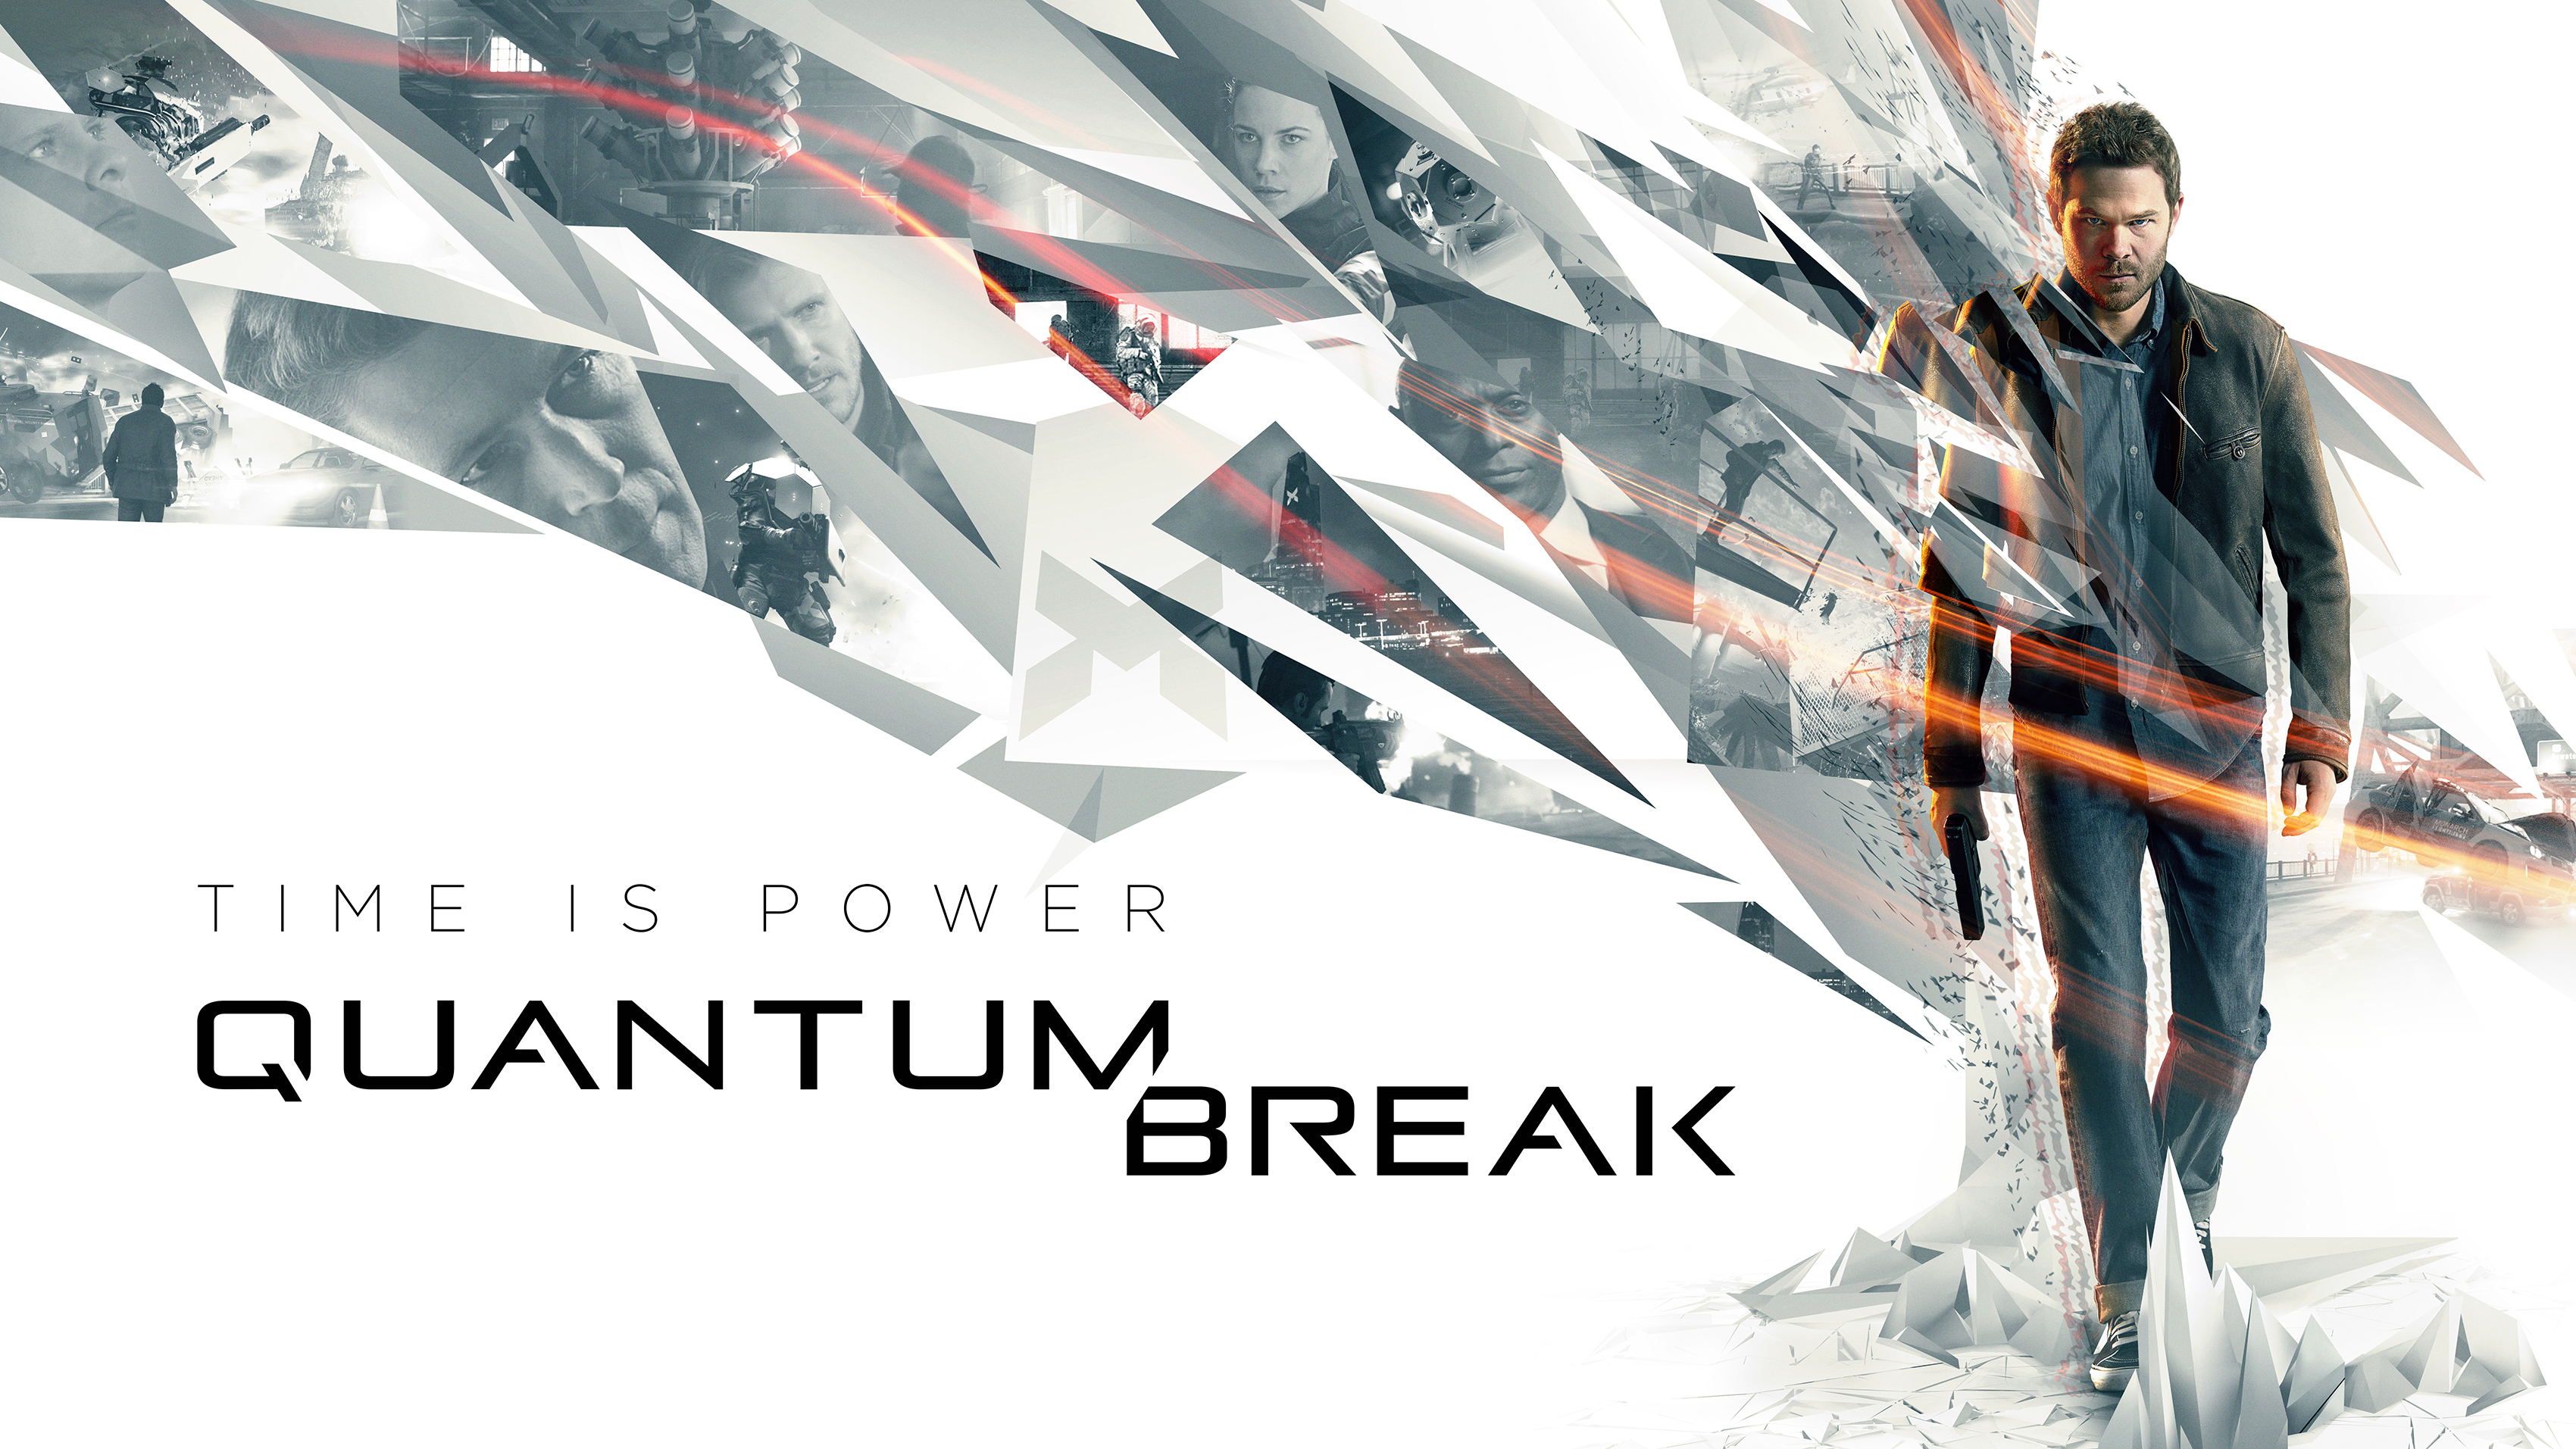 دانلود Quantum Break - بازی کوانتوم بریک